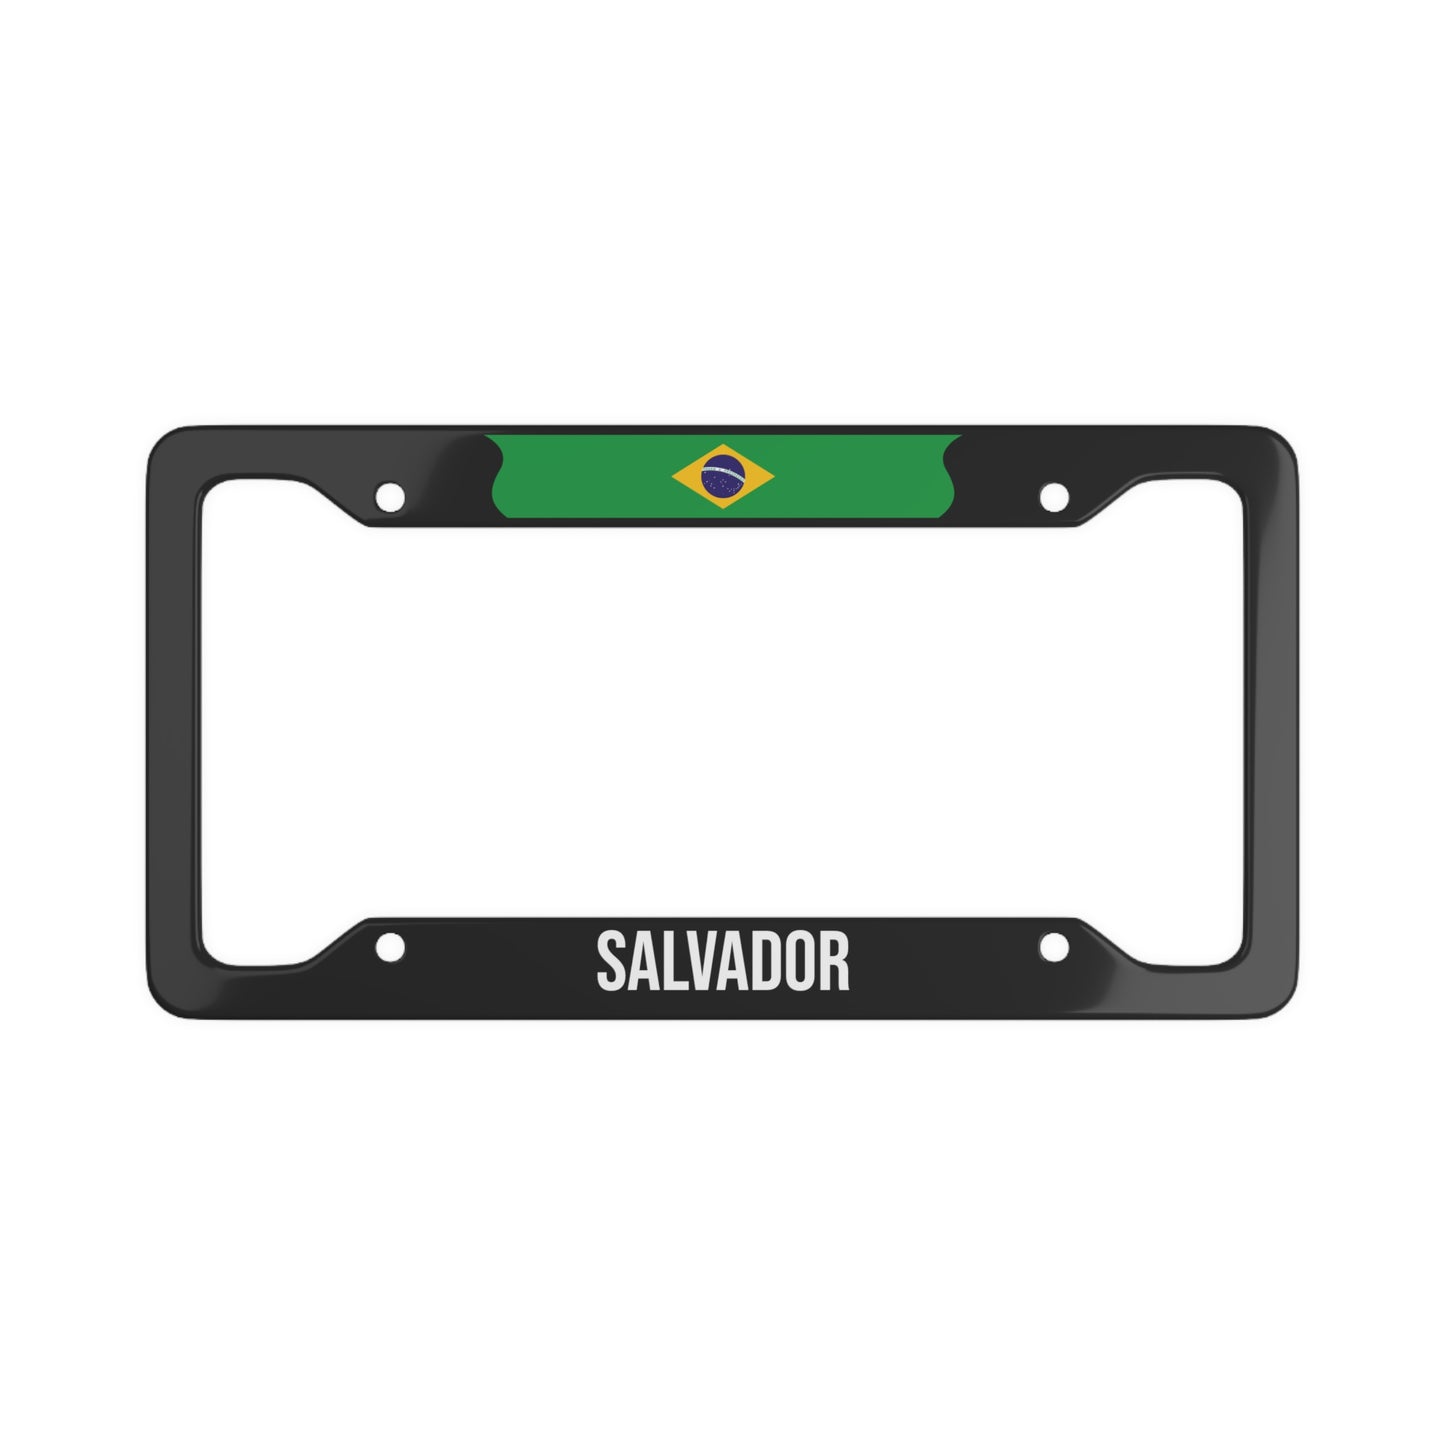 Salvador, Brazil Car Plate Frame